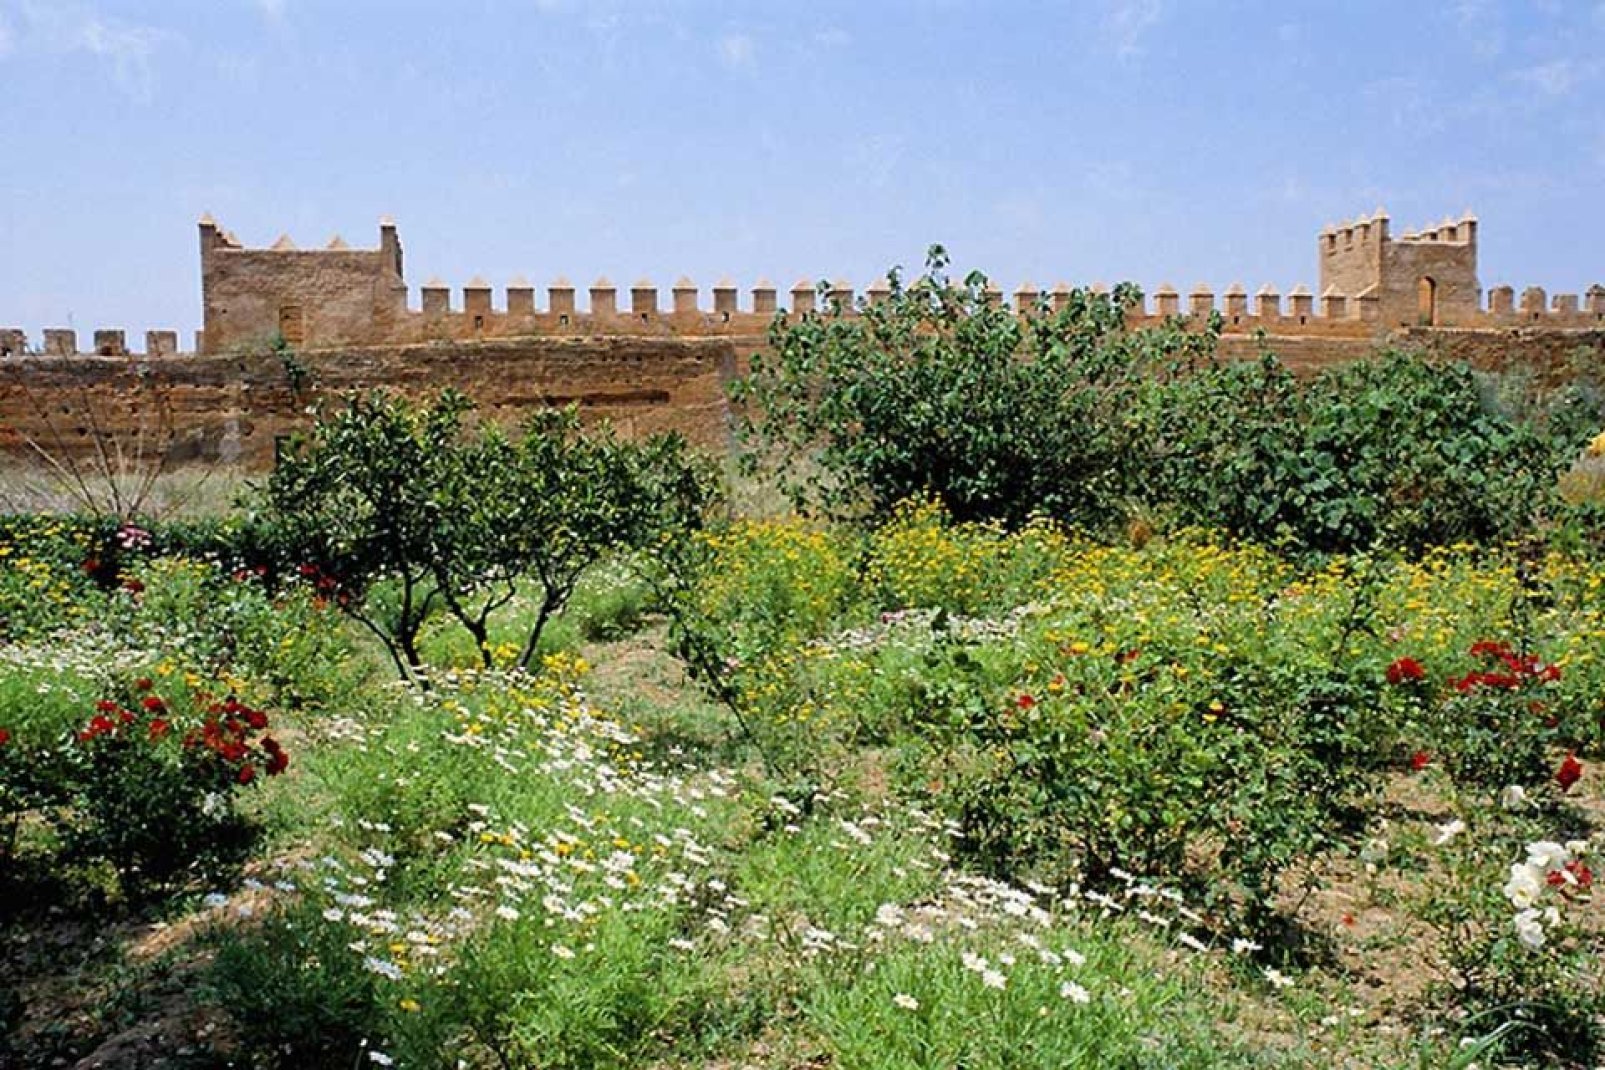 Nach der Besichtigung der Kasbah können Sie in den wunderschönen andalusischen Gärten flanieren.